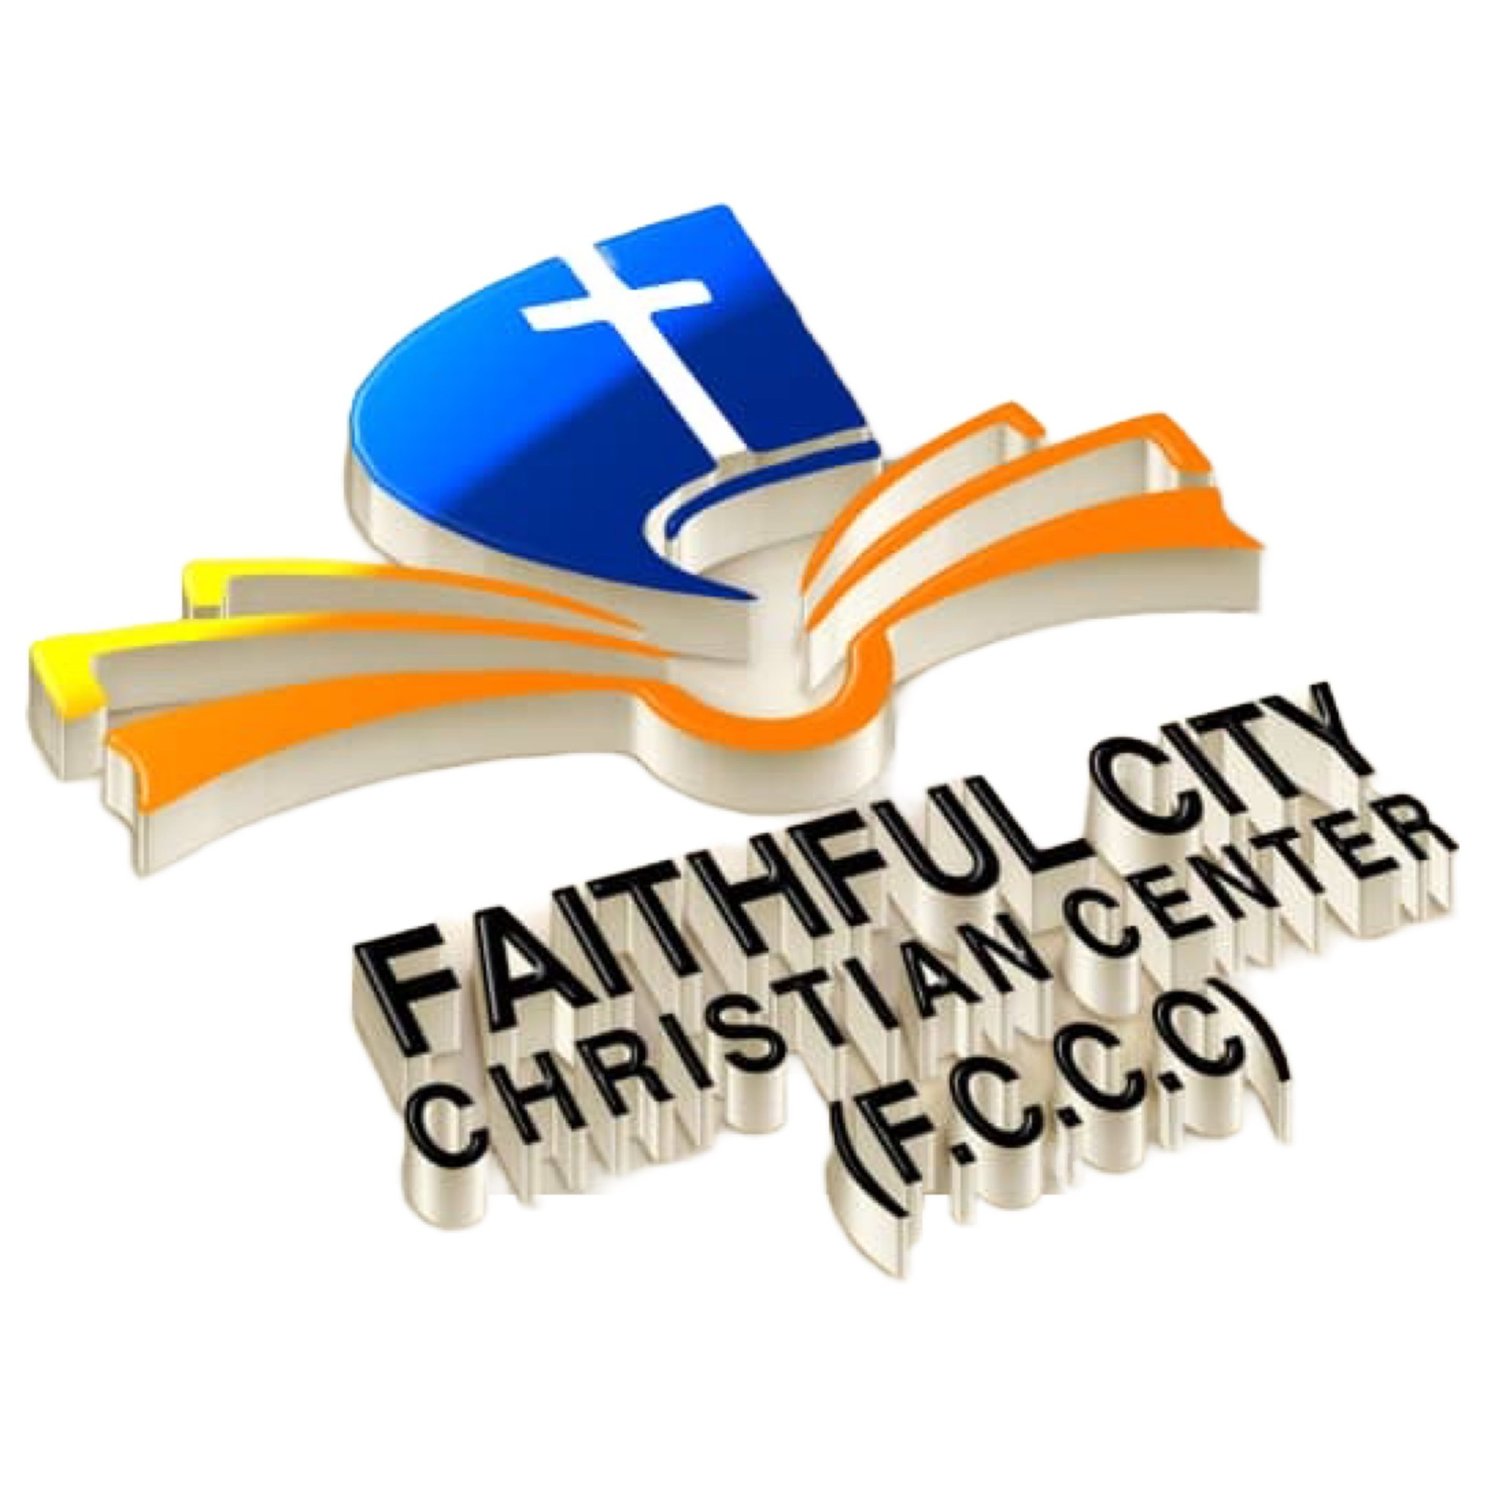 Faithful City Christian Center